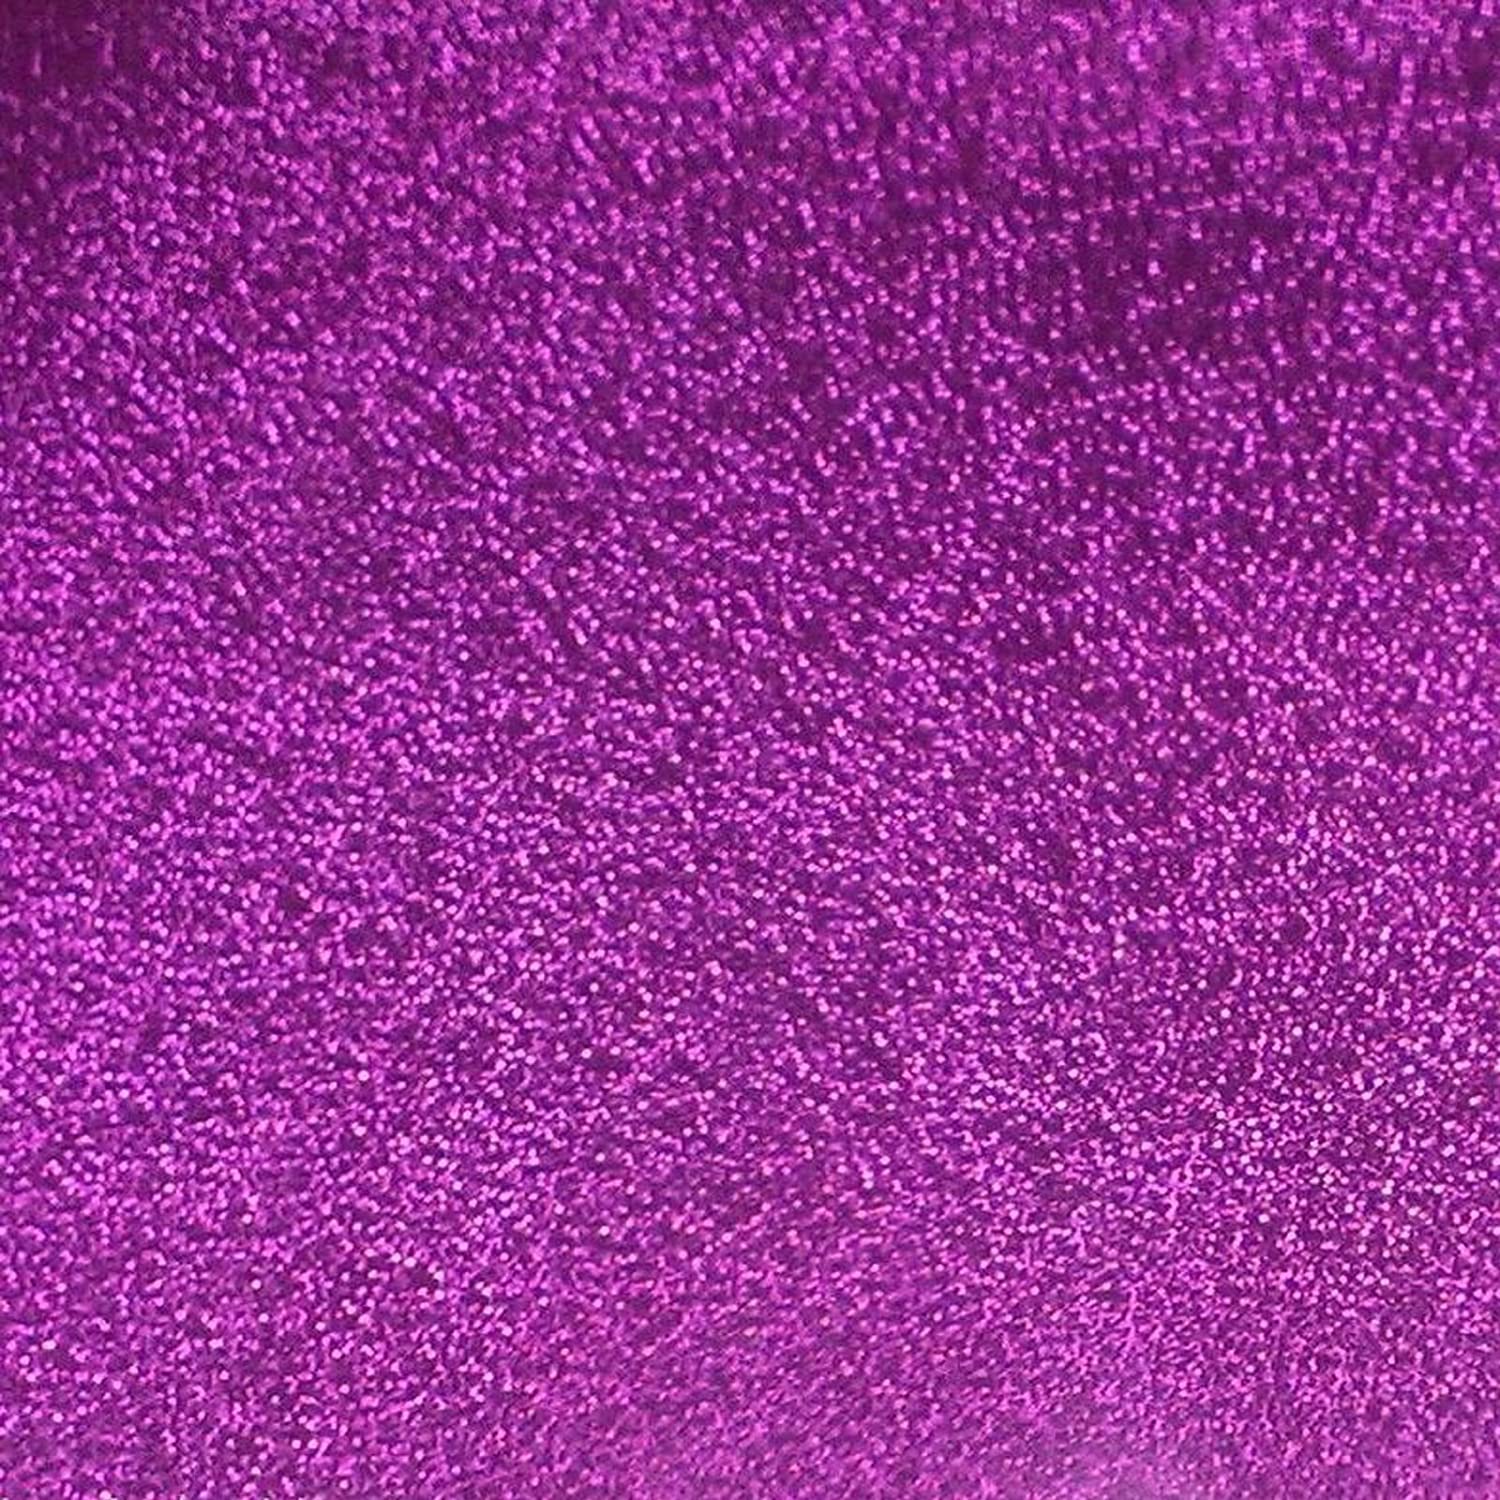 Hình nền Holographic Glitter 1500x1500 - Màu hồng - DL40706 .uk: DIY & Tools